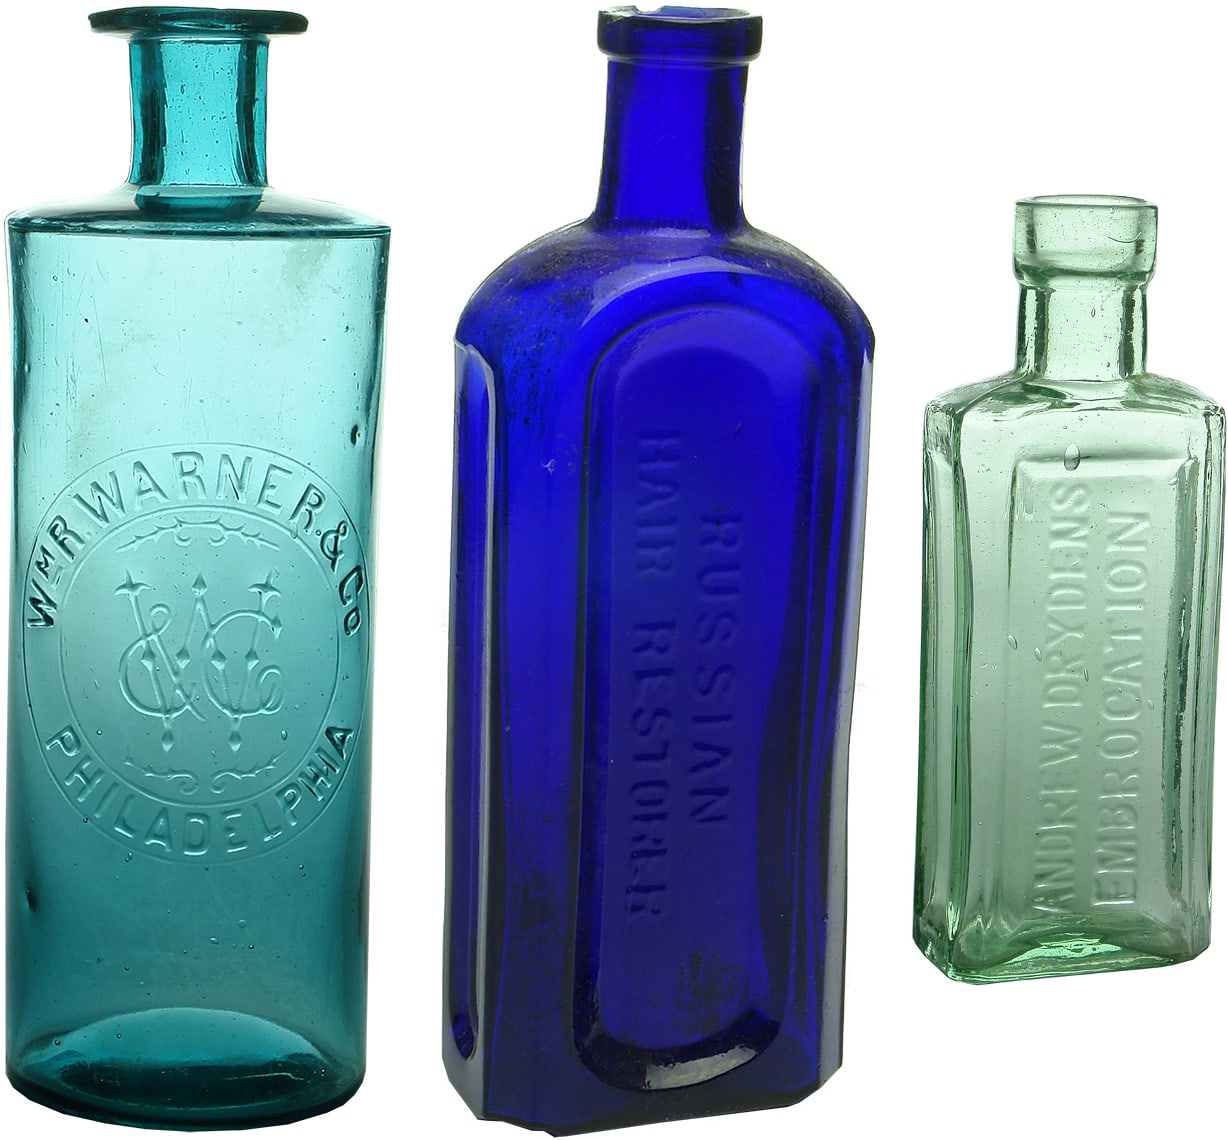 Antique Embrocation Cure Restorer Antique Bottles